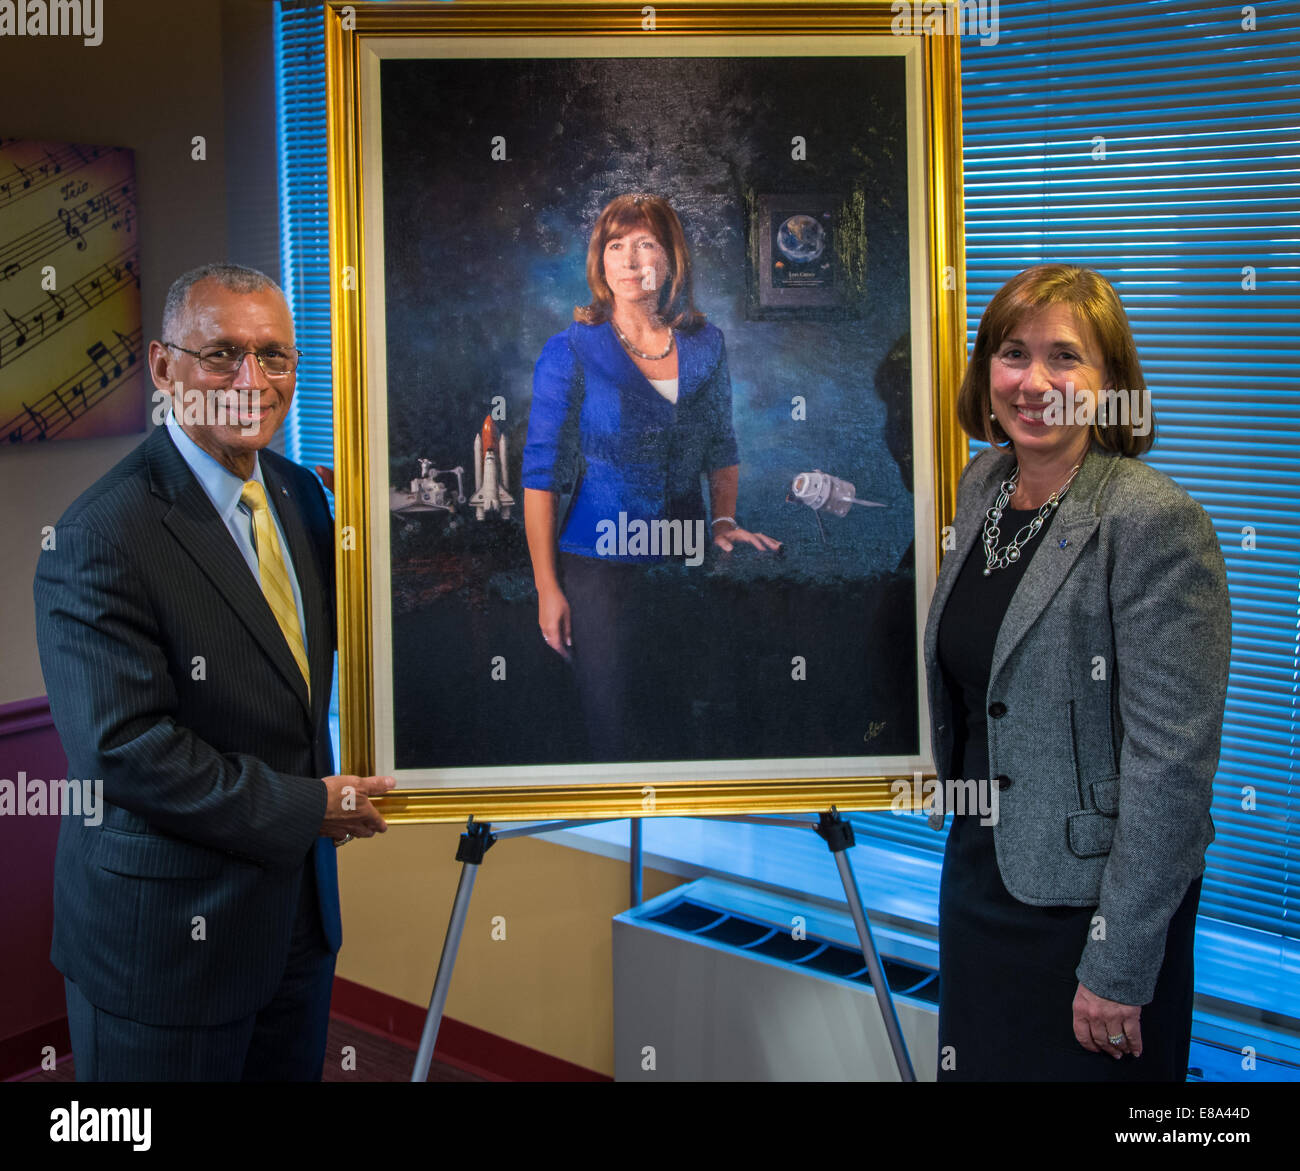 L'administrateur de la NASA Charles Bolden, pose pour une photo avec l'ancien administrateur adjoint de la NASA Lori Garver, après le dévoilement de son portrait officiel le mercredi 17 septembre 2014 au siège de la NASA à Washington. Garver a servi comme adjoint de la NASA admin Banque D'Images